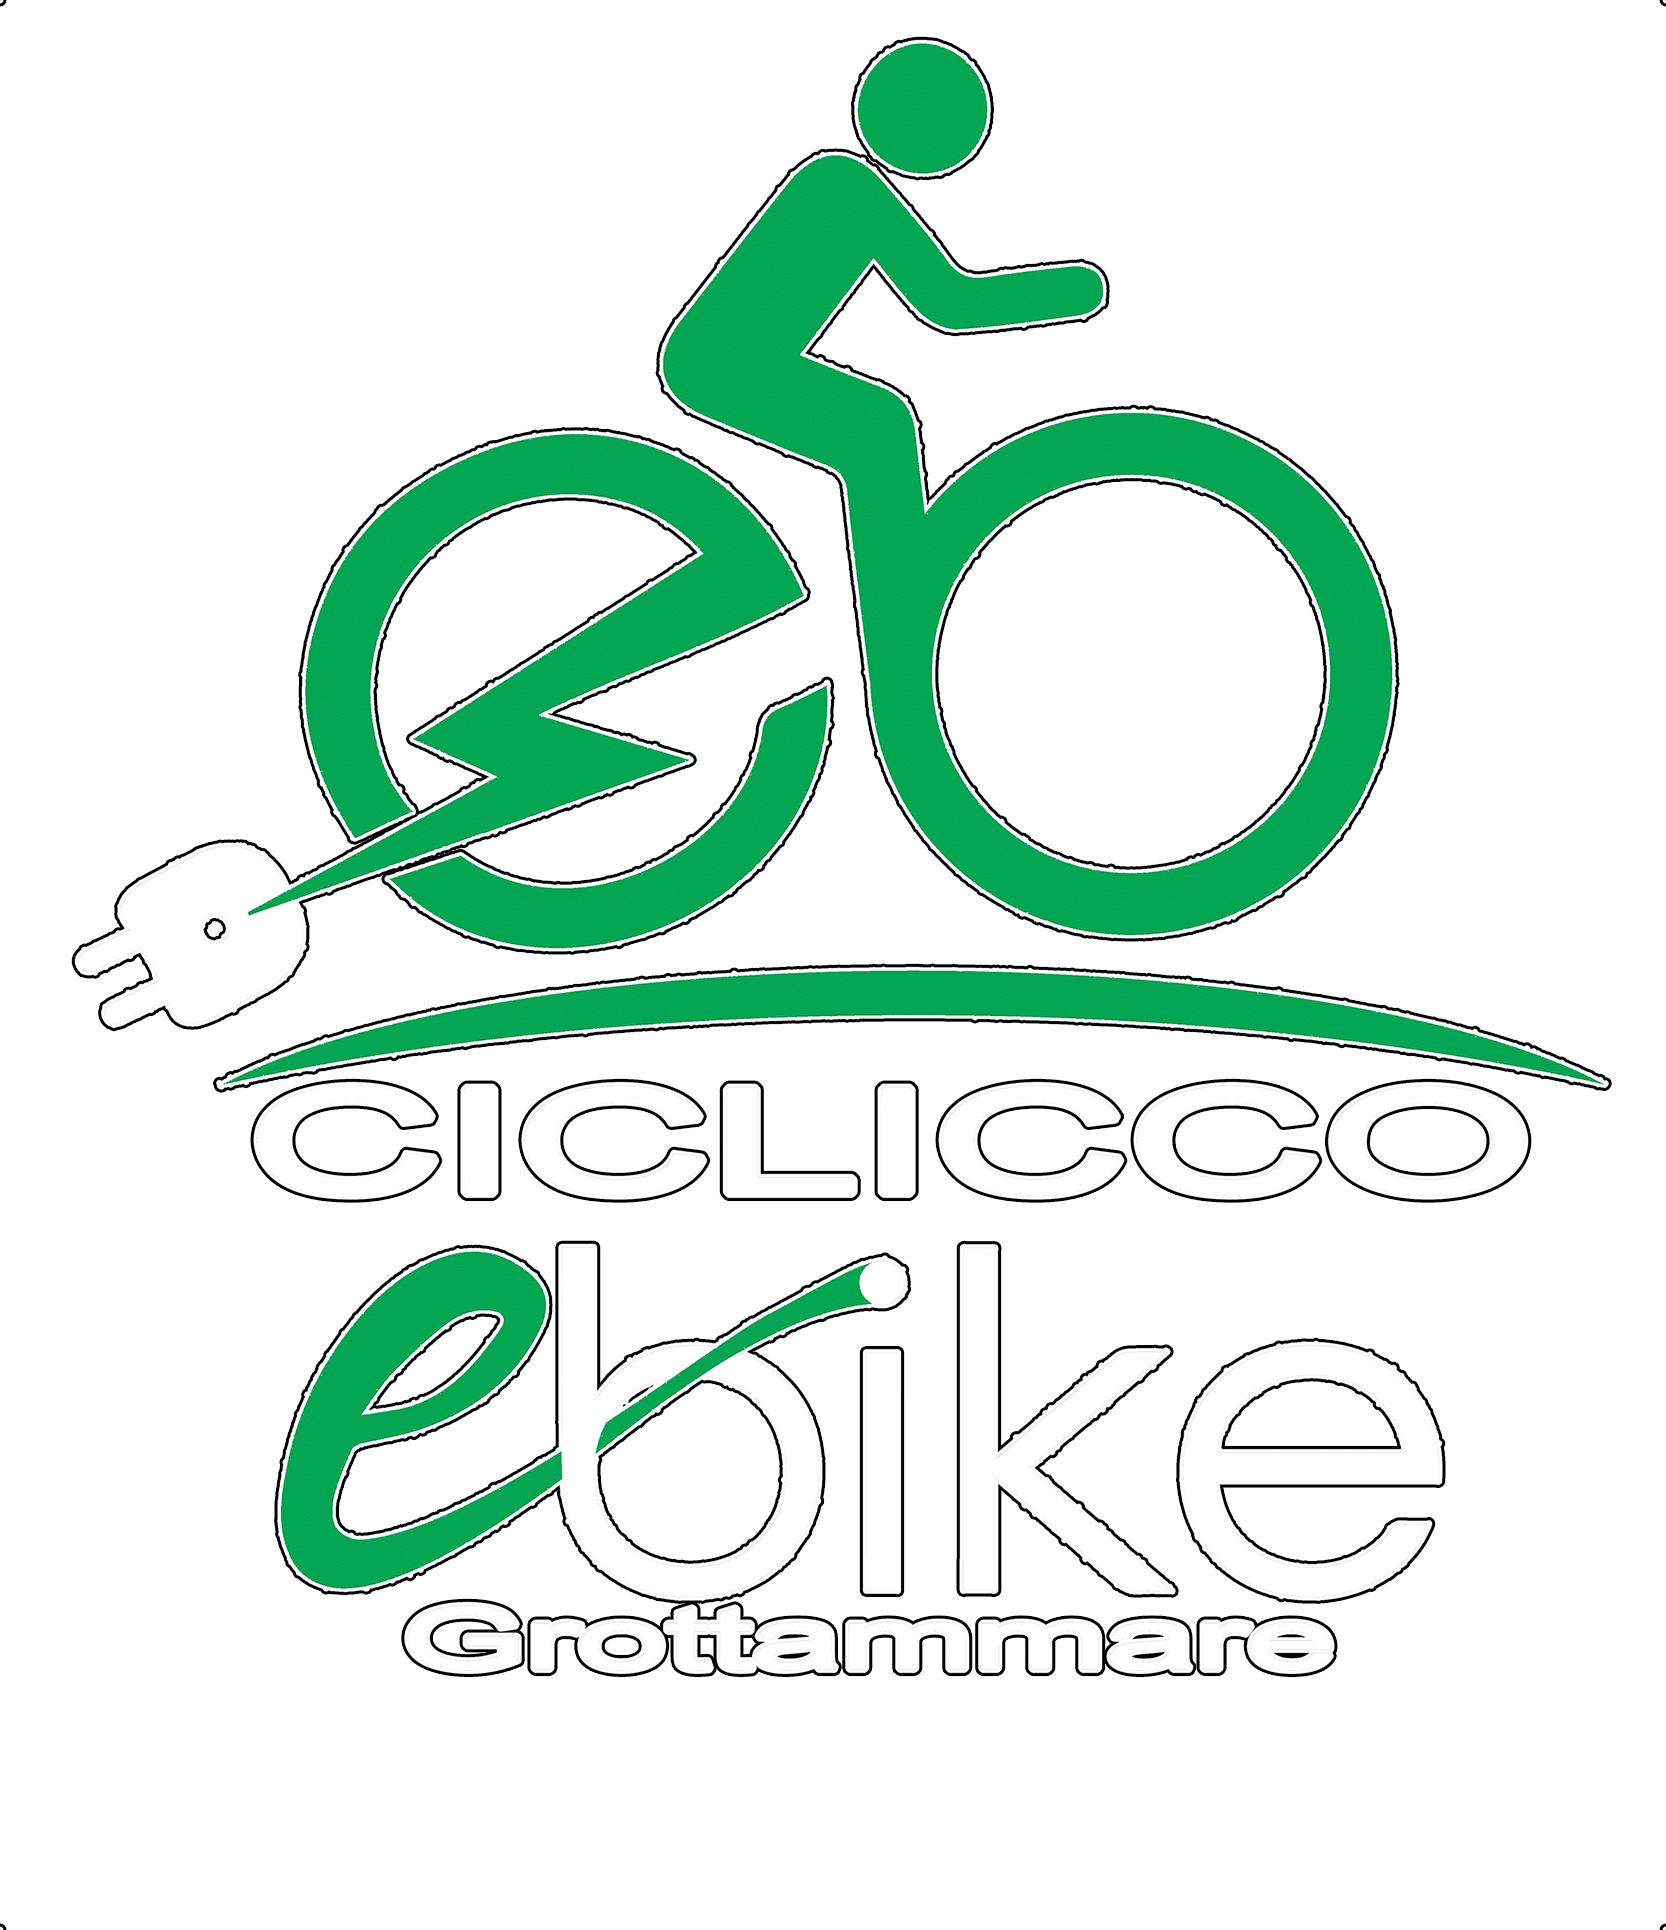 Ciclicco eBike